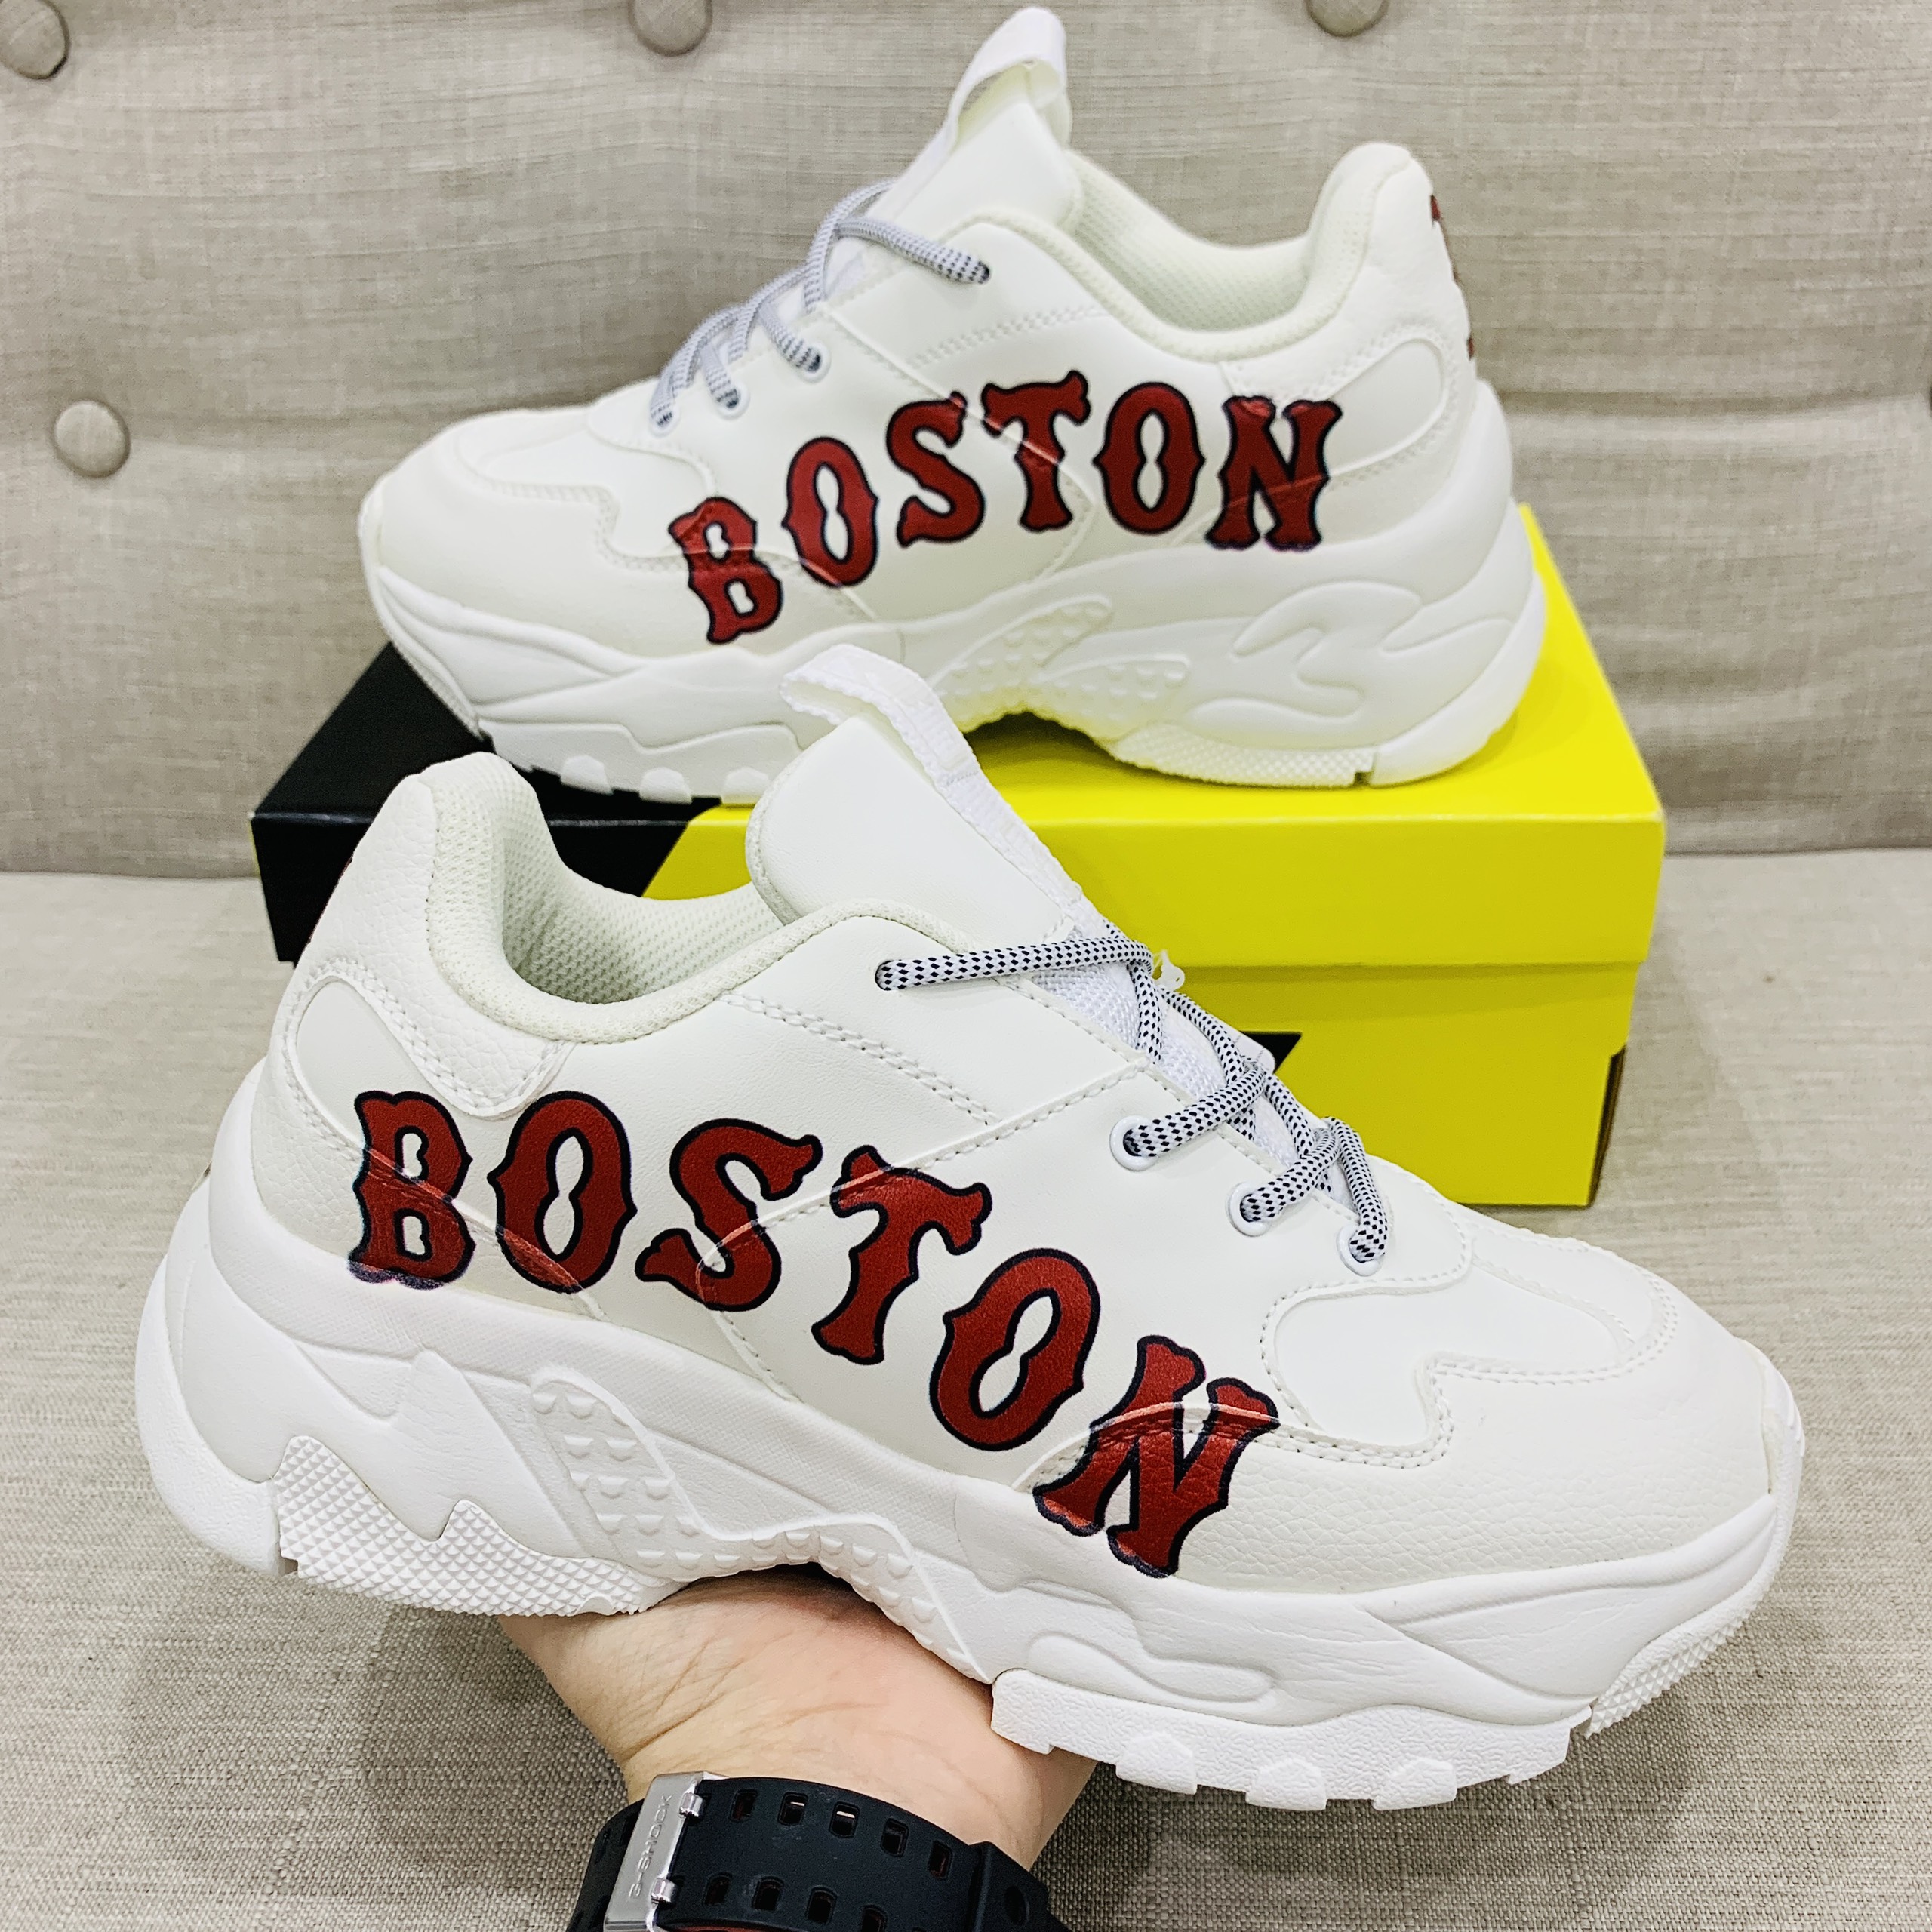 Giày MLB Boston 2021 rep 11 trắng chữ đỏ cực rẻ  Góc Của Nhỏ